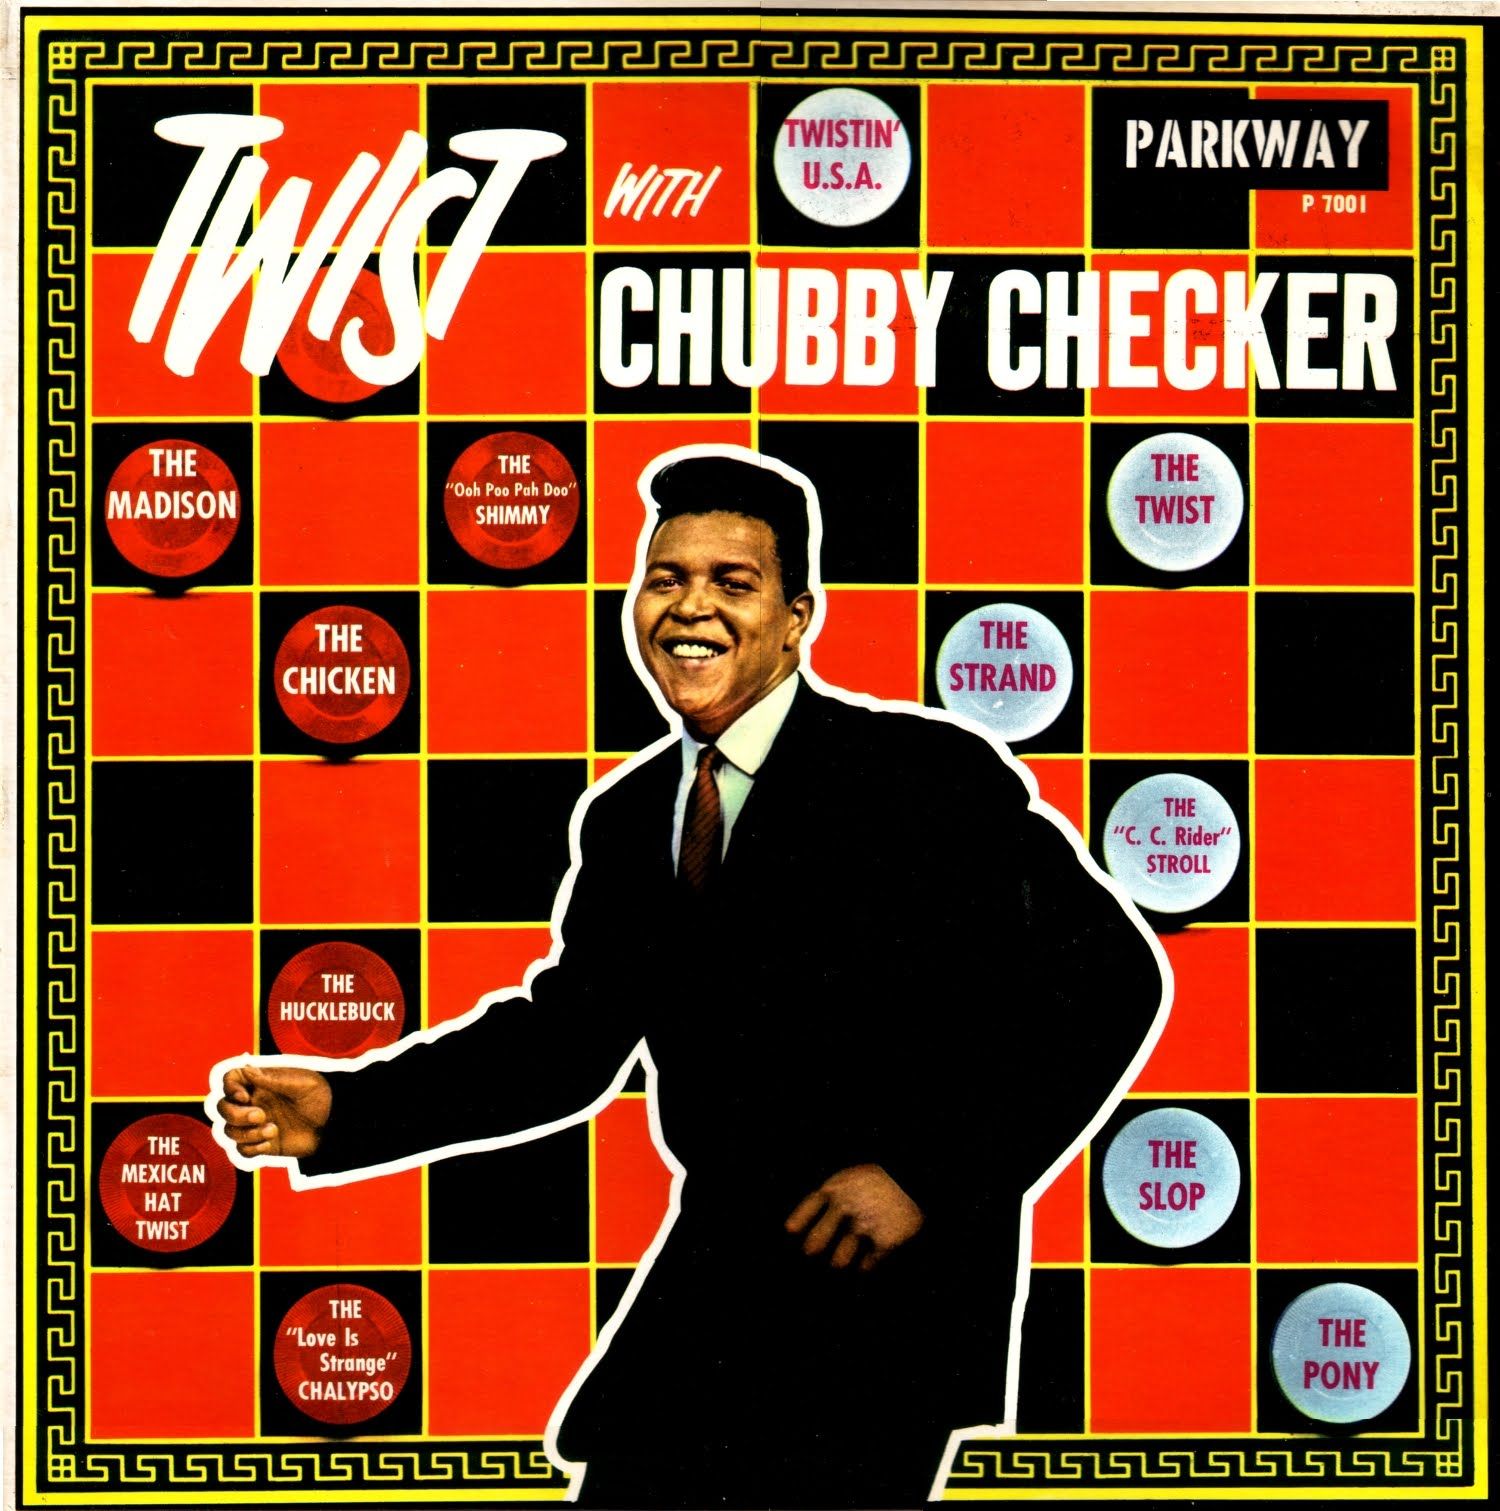 Chubby checker chubby checker